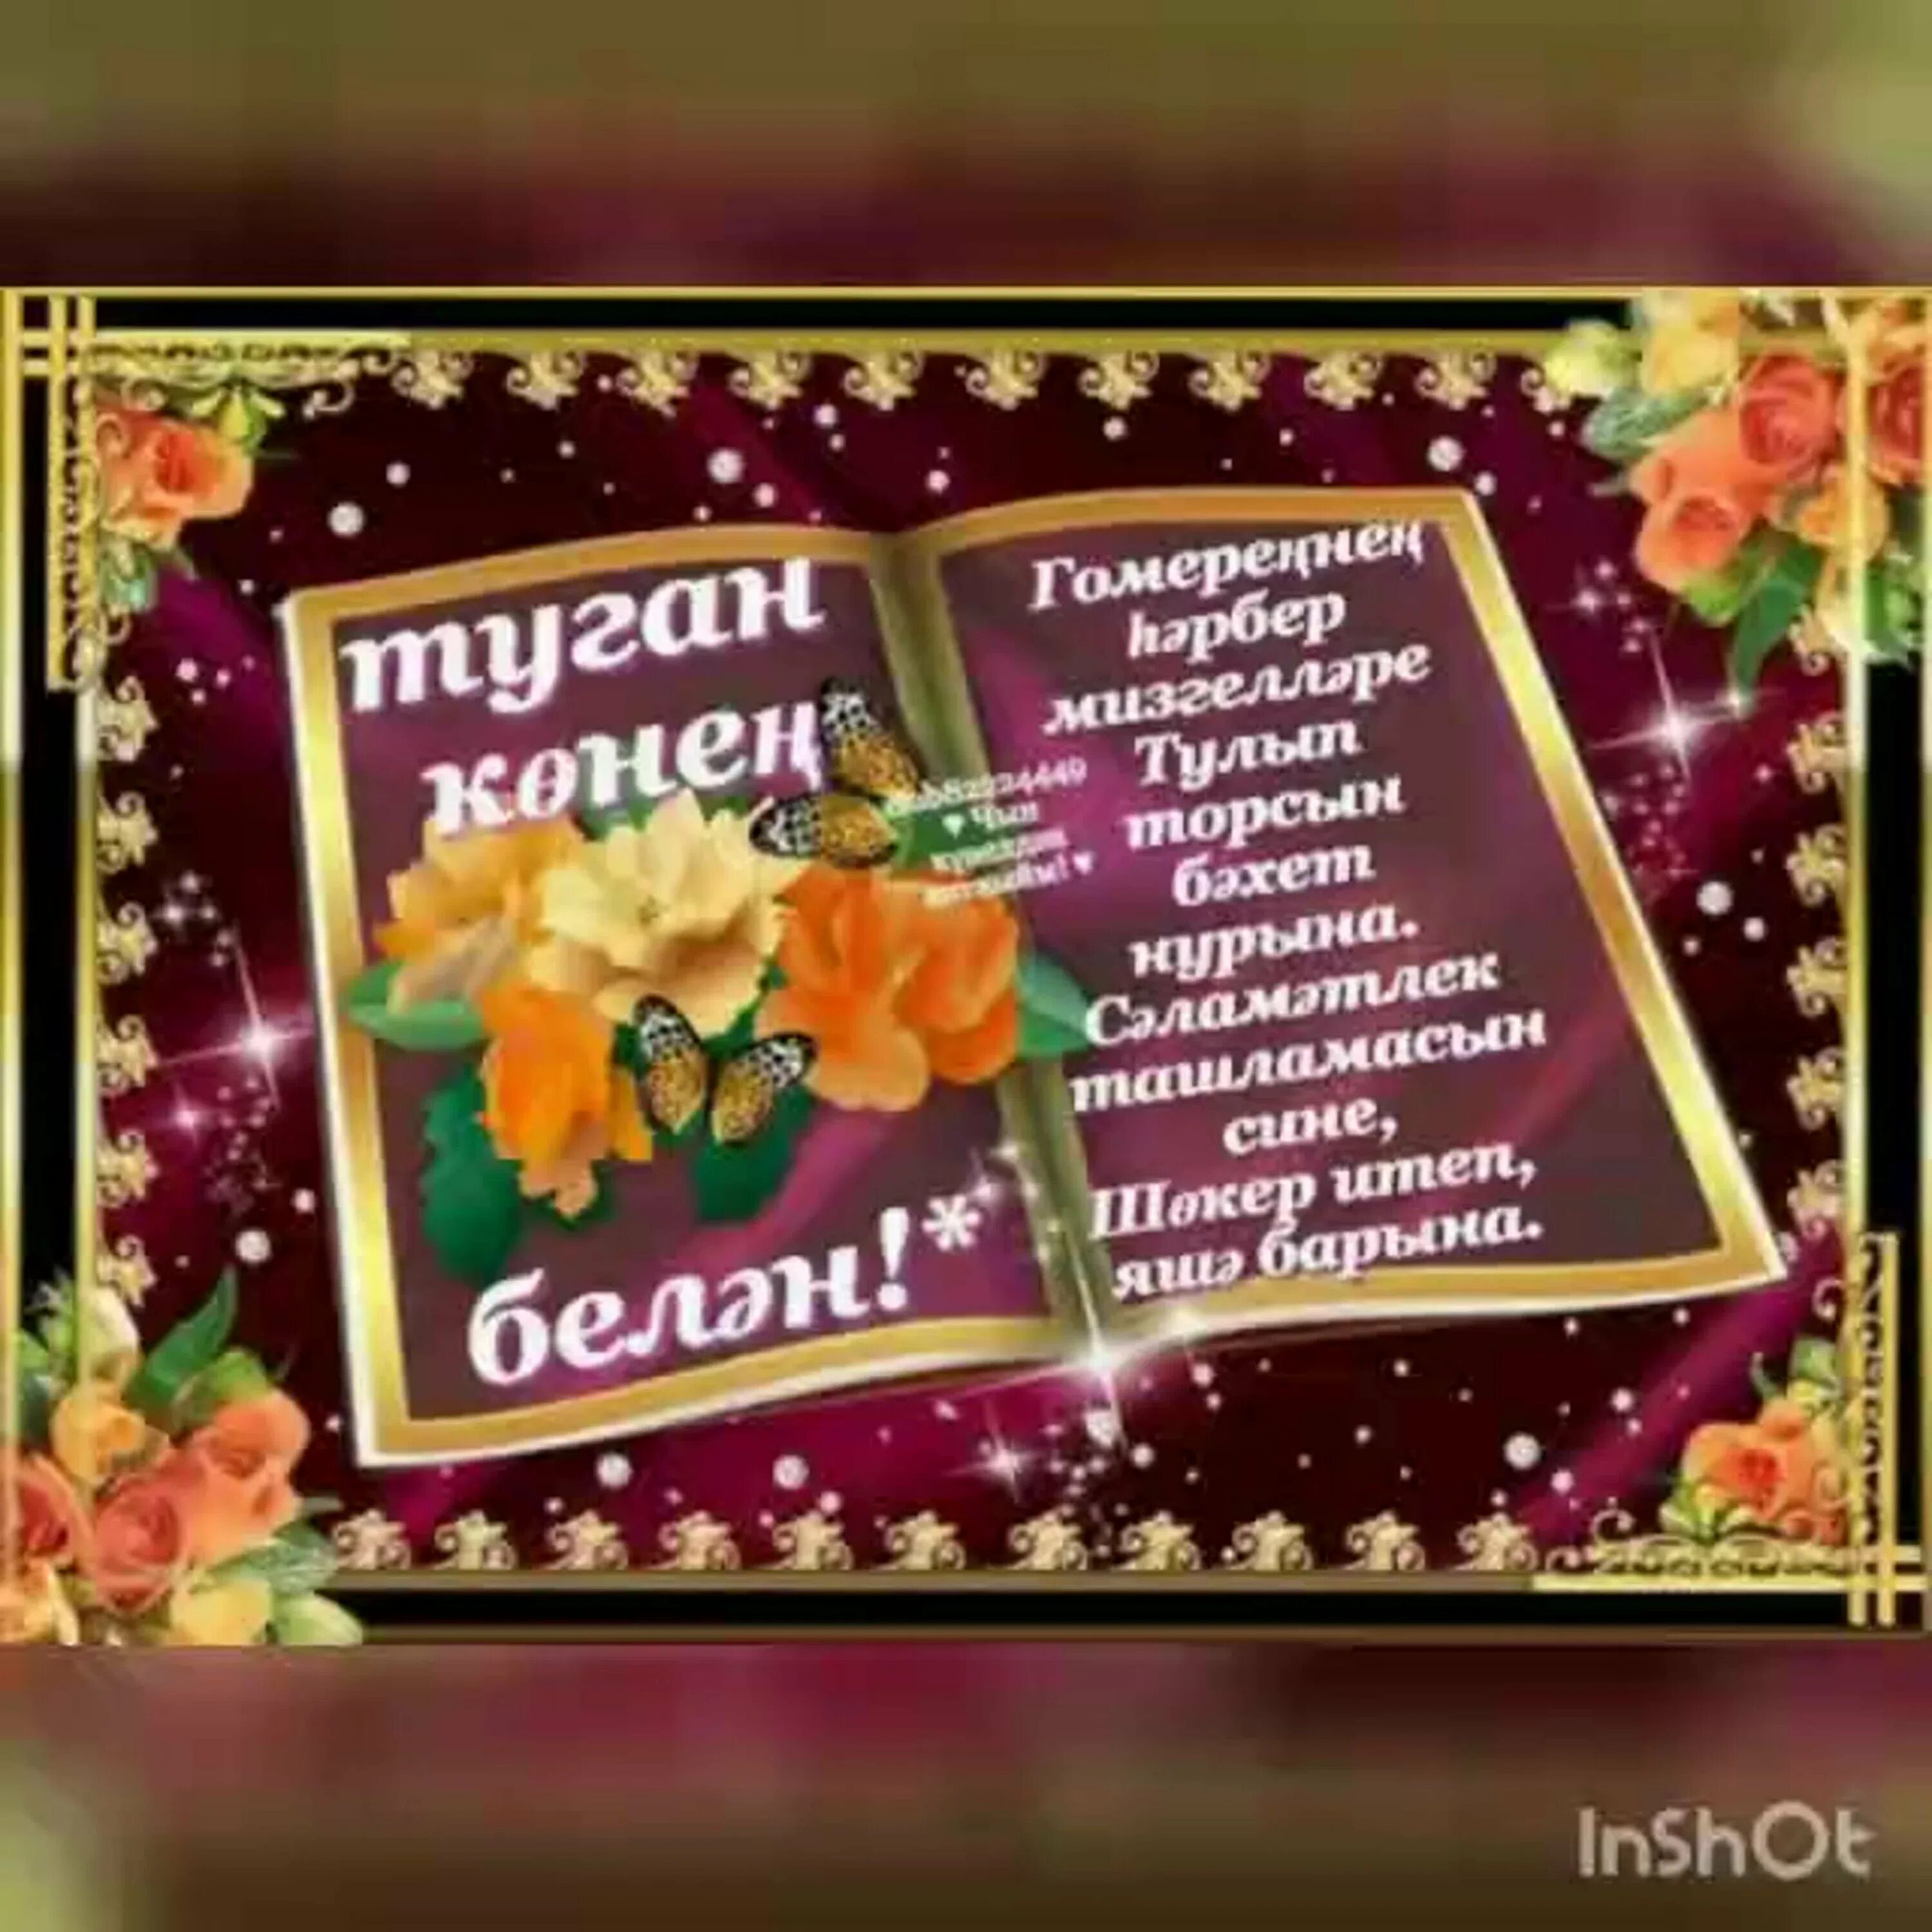 Поздравление туган конен белэн. Поздравления с днём рождения на татарском языке. Поздравления с днём рождения мужчине на татарском языке. Поздравления с днем рождения на тата. Поздравления с днём с днём рождения на татарском языке.